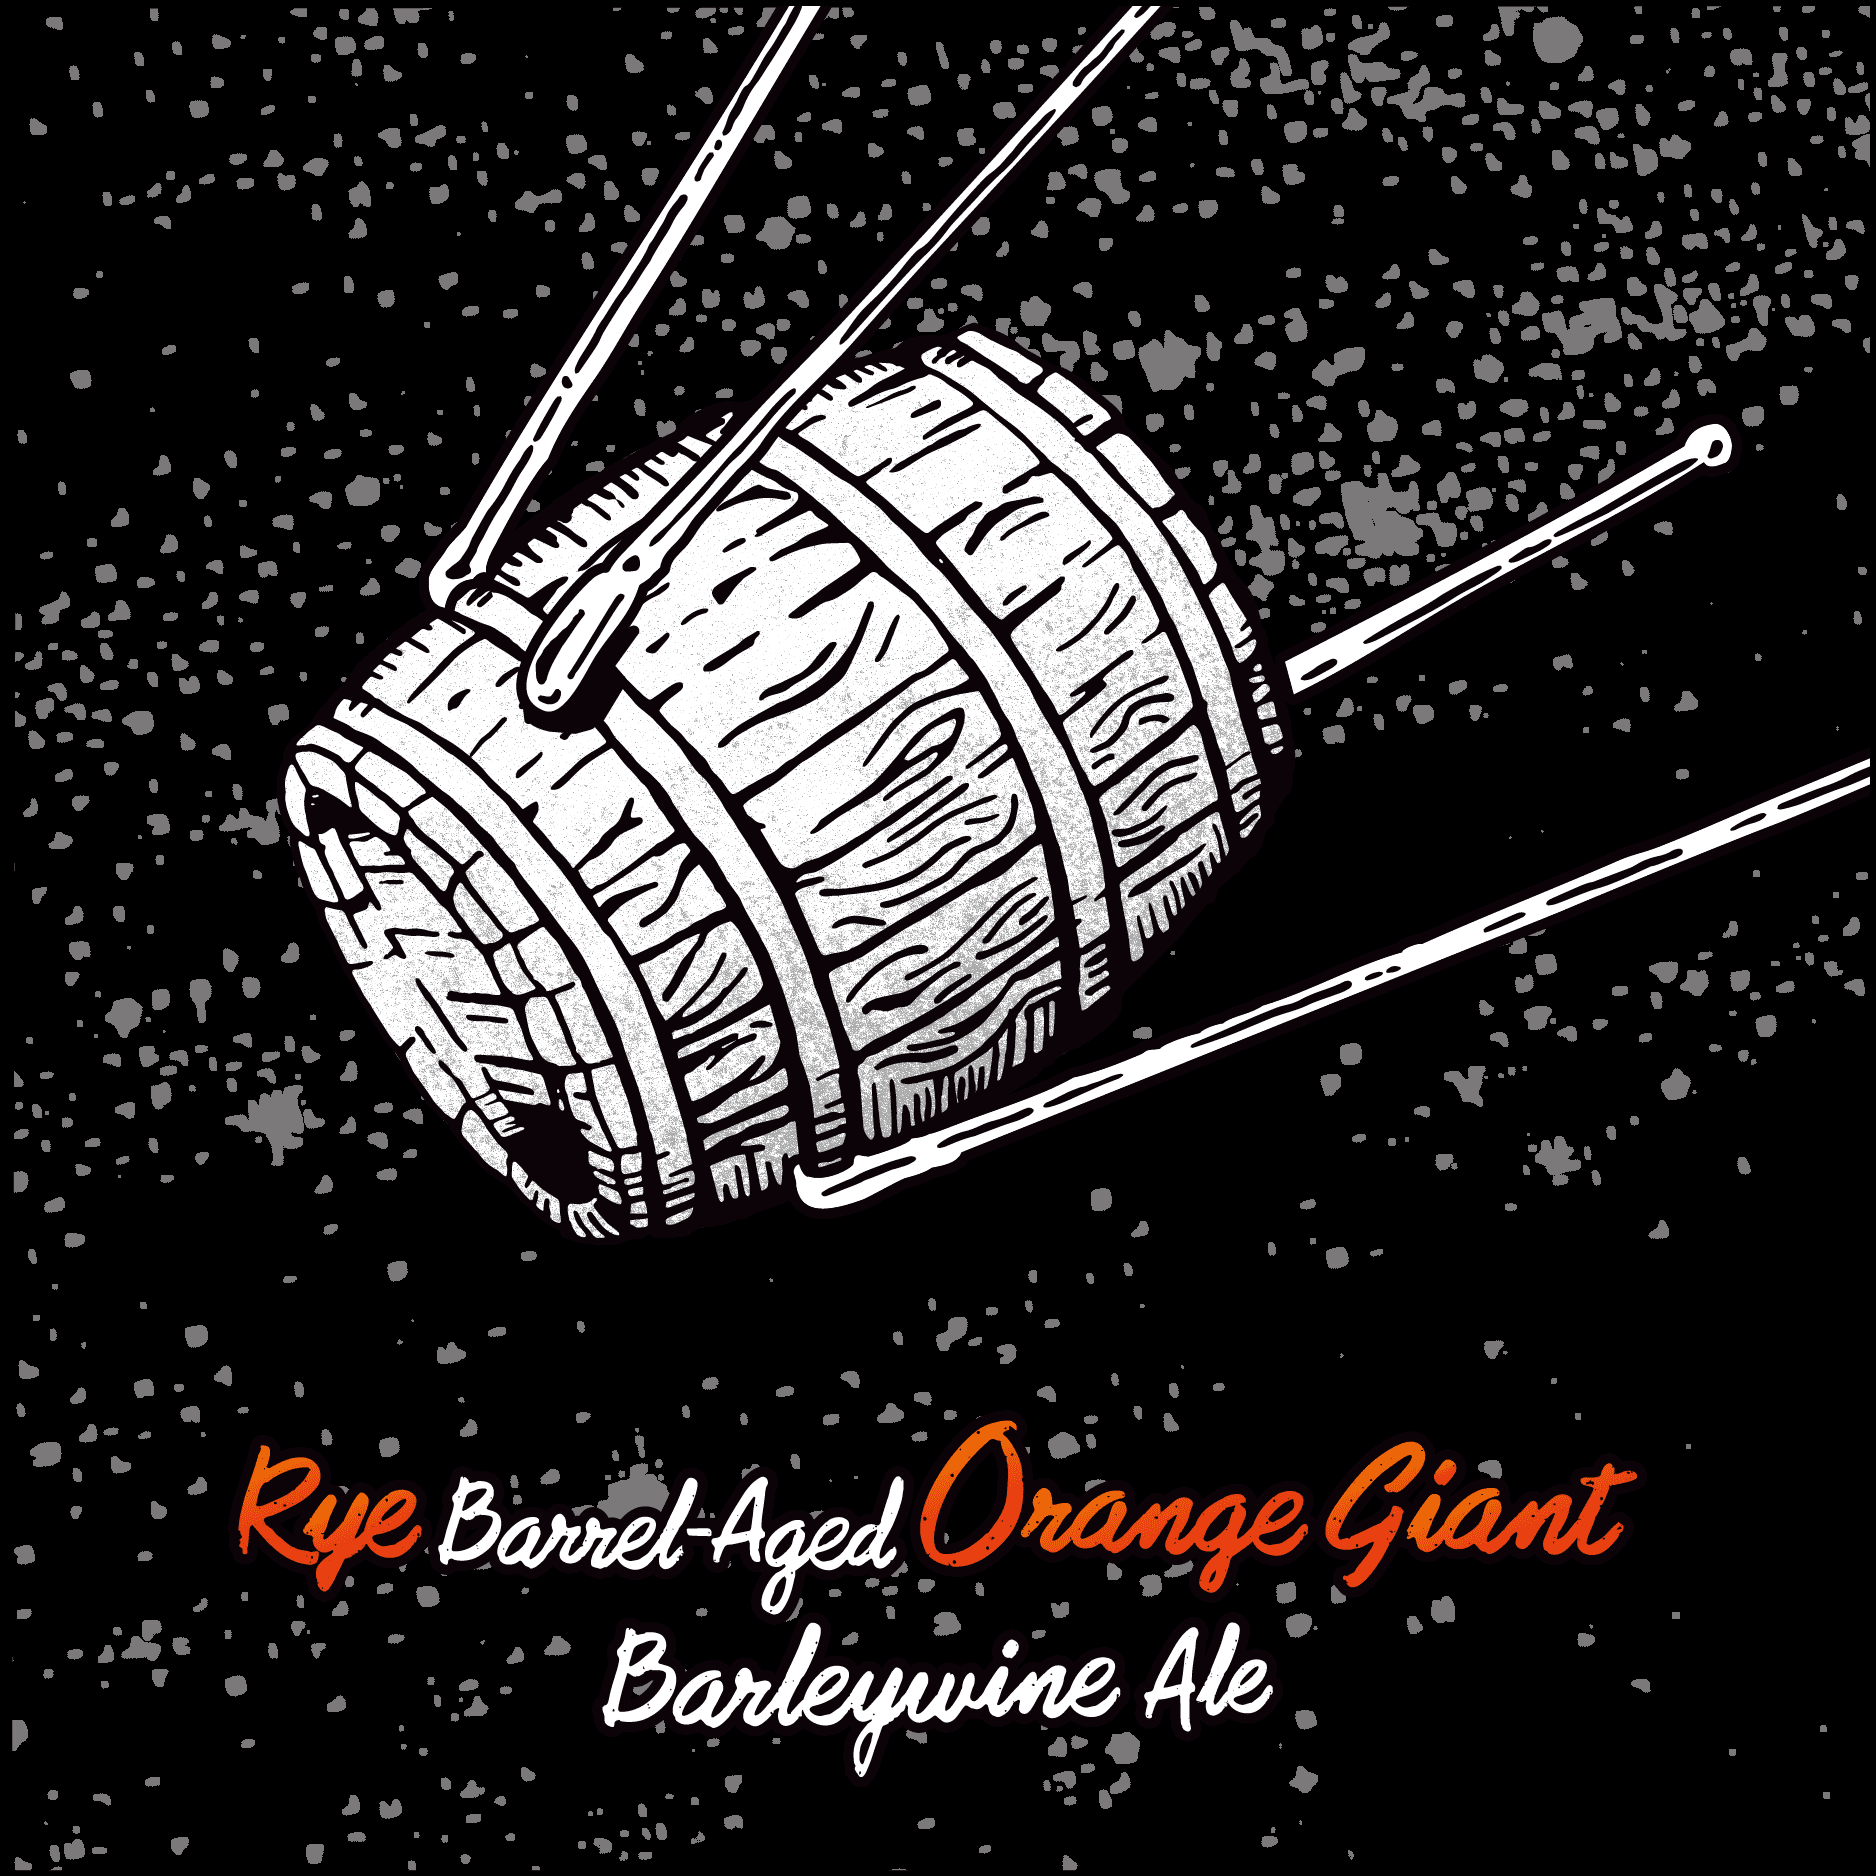 Rye Barrel-Aged Orange Giant Barleywine